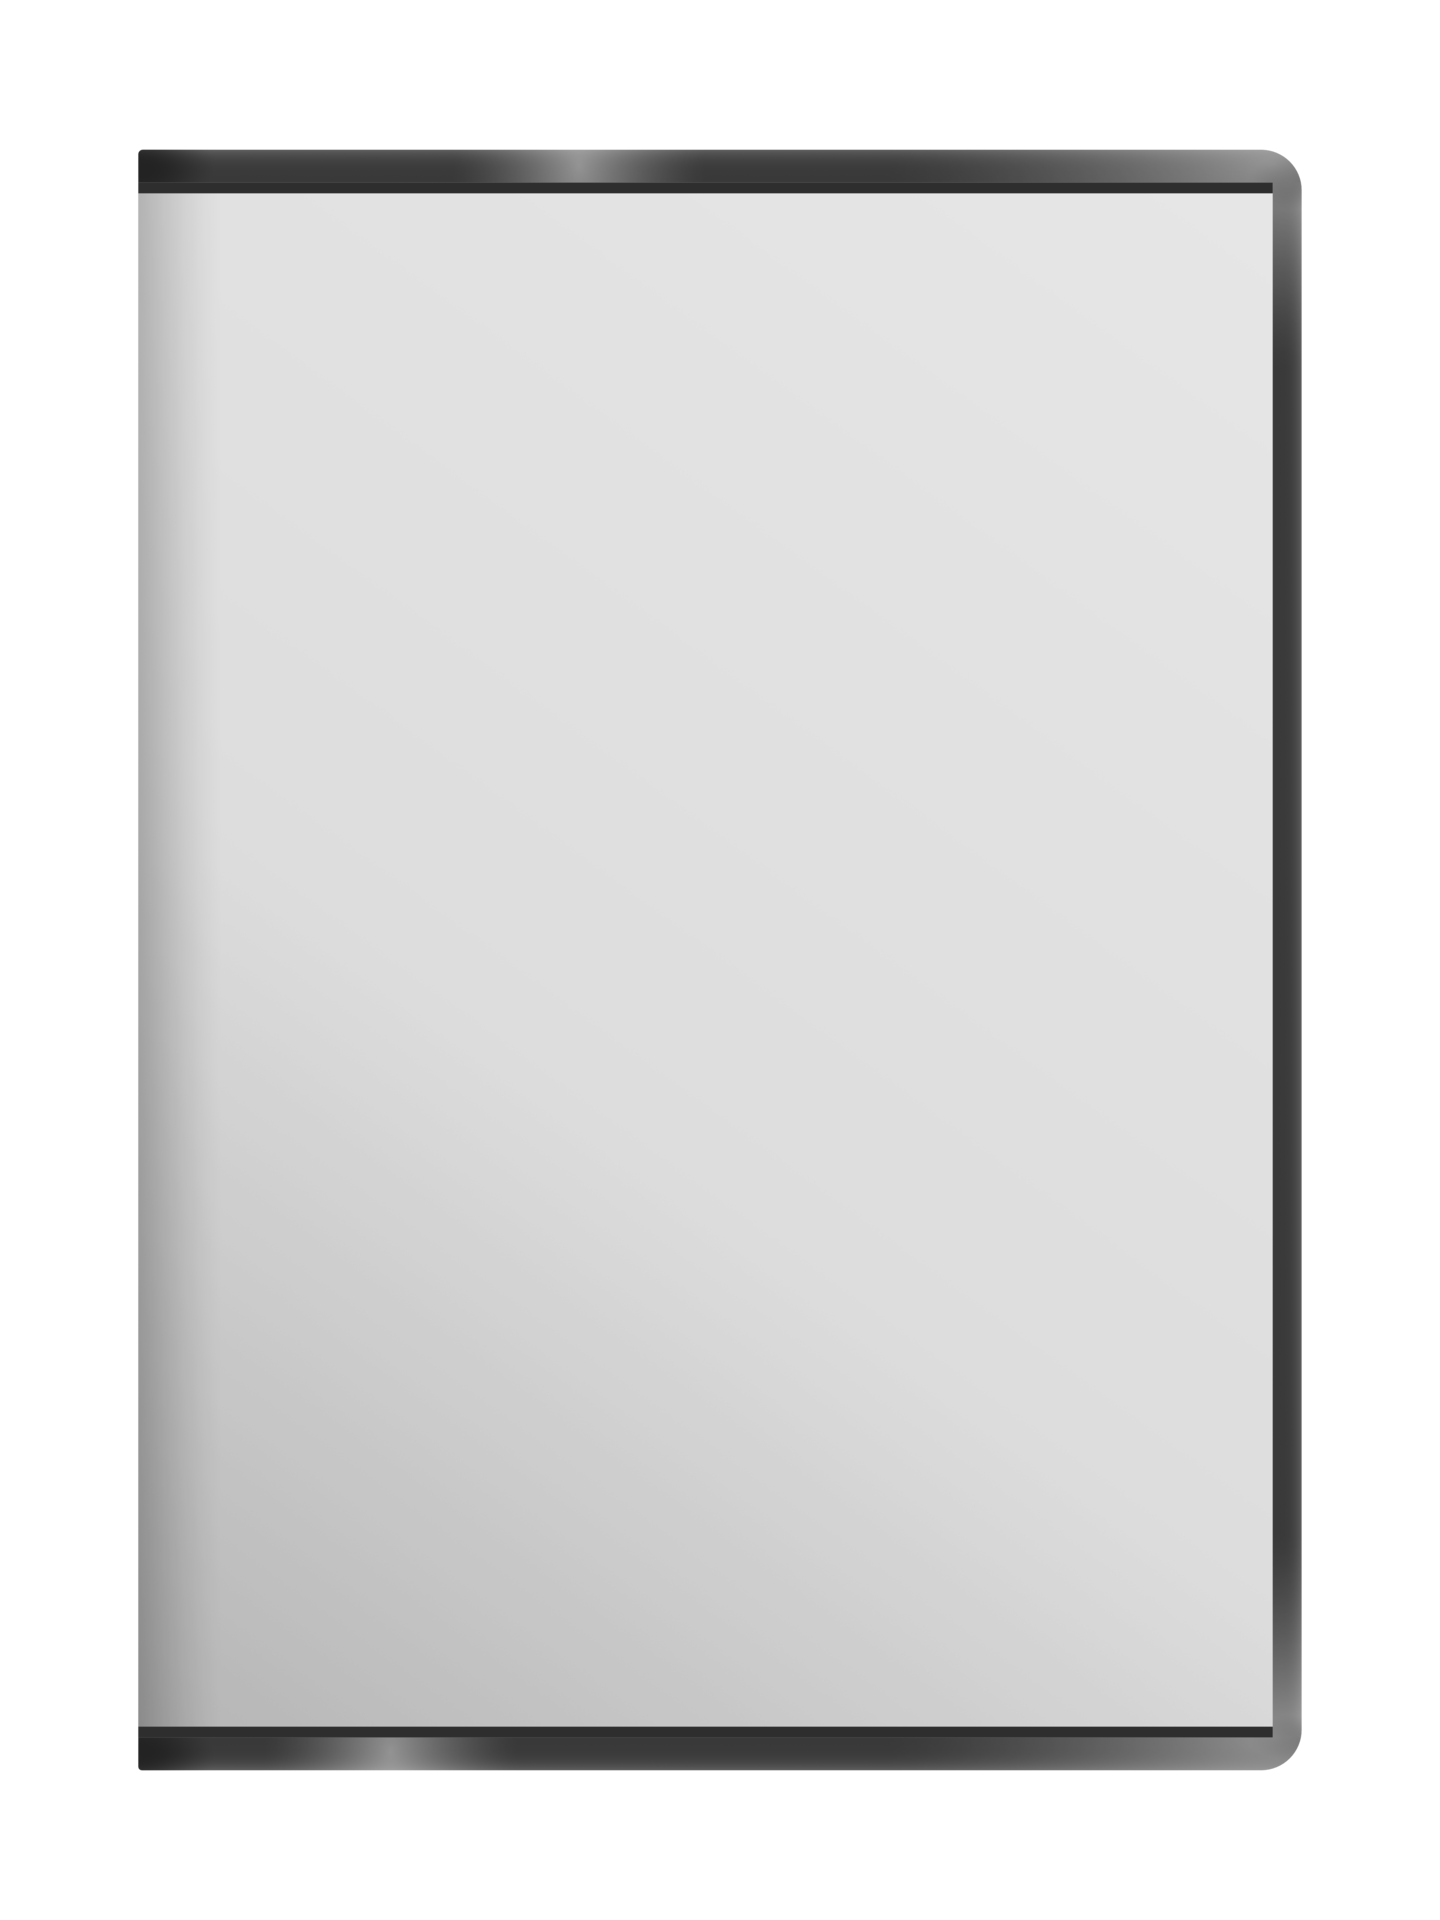 civilisation Portico overskud Blank white DVD case 13442207 PNG